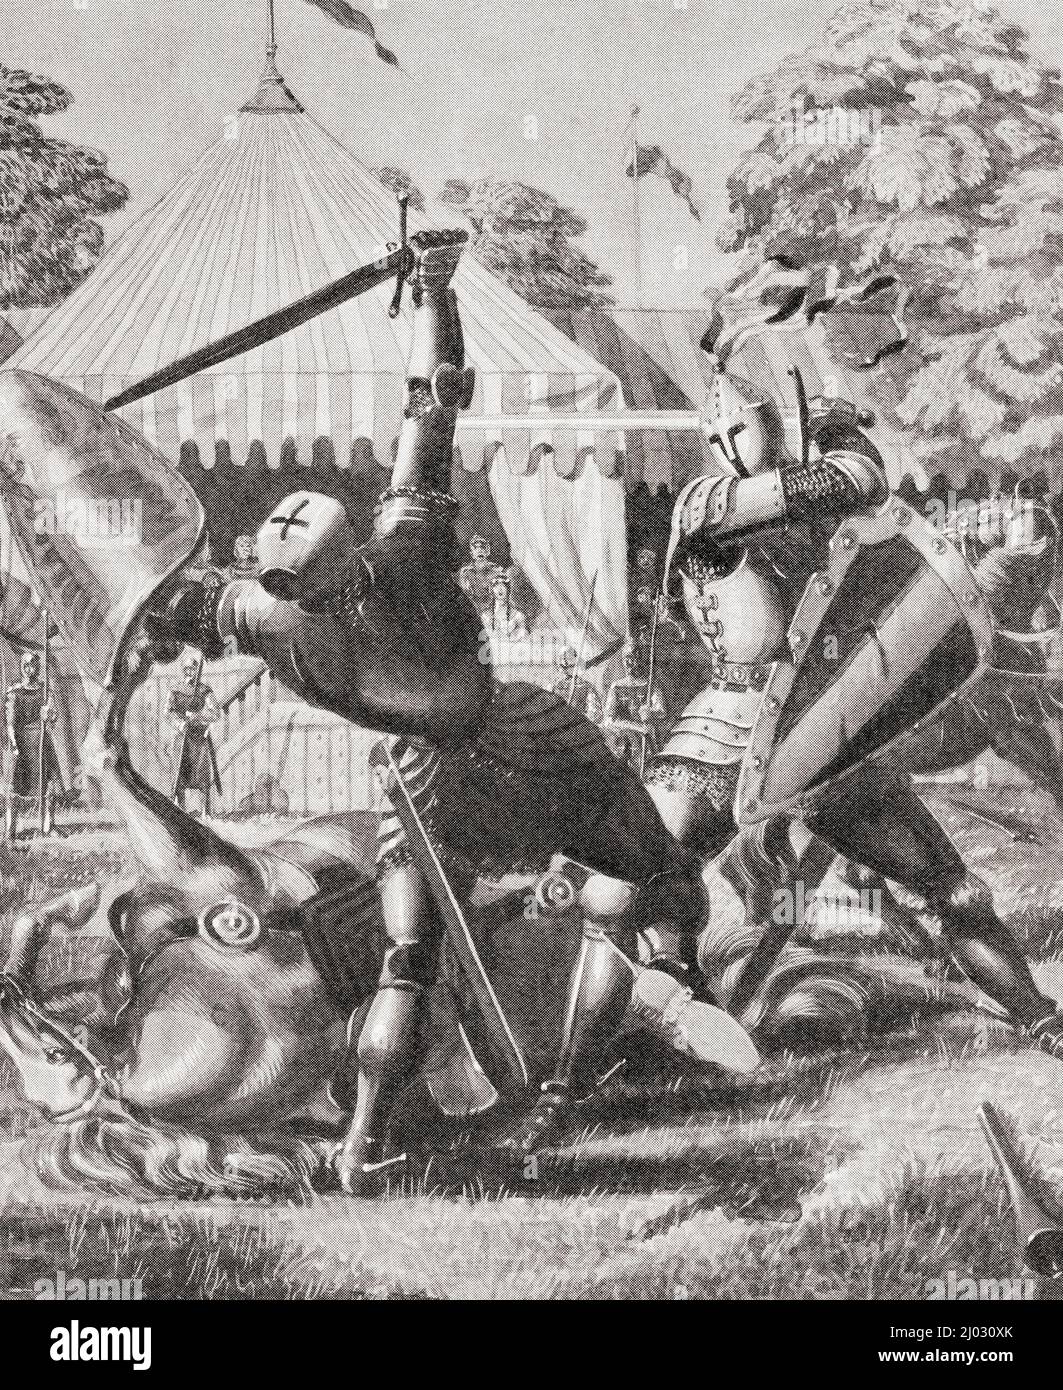 Due cavalieri che combattevano al tempo di re Artù. Dal Paese delle meraviglie della conoscenza, pubblicato c.1930 Foto Stock